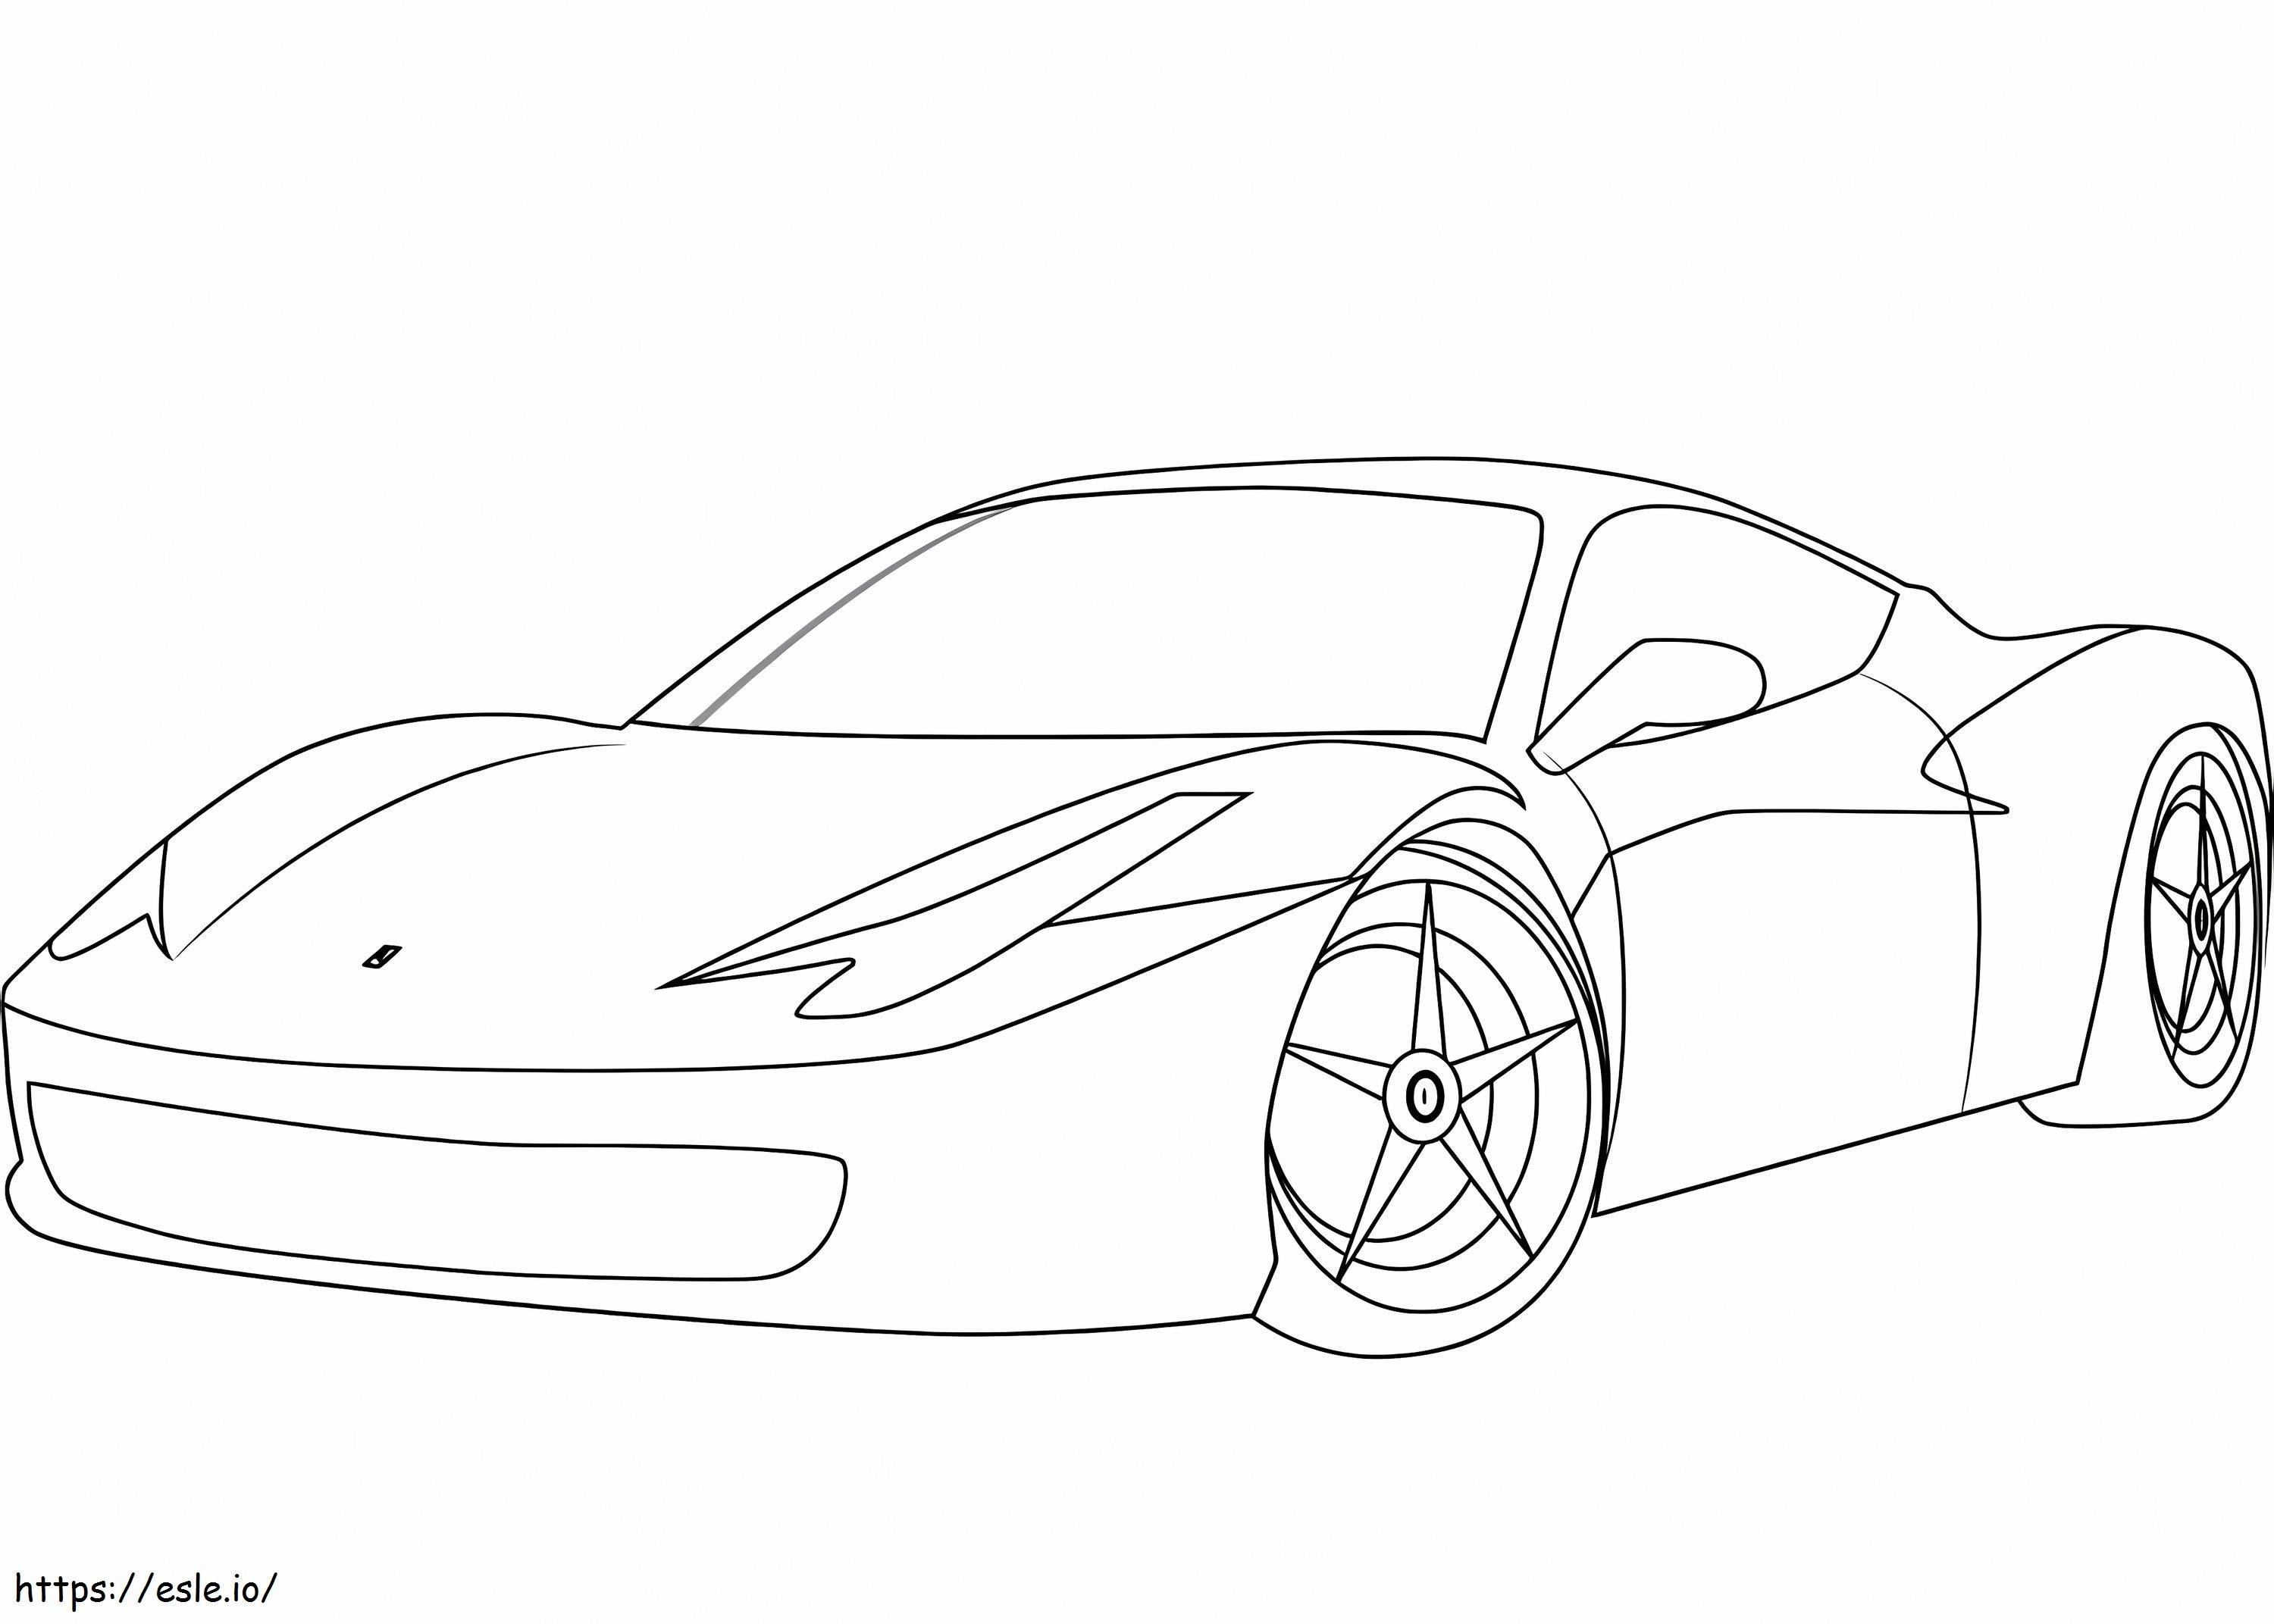 Ferrari 458 coloring page